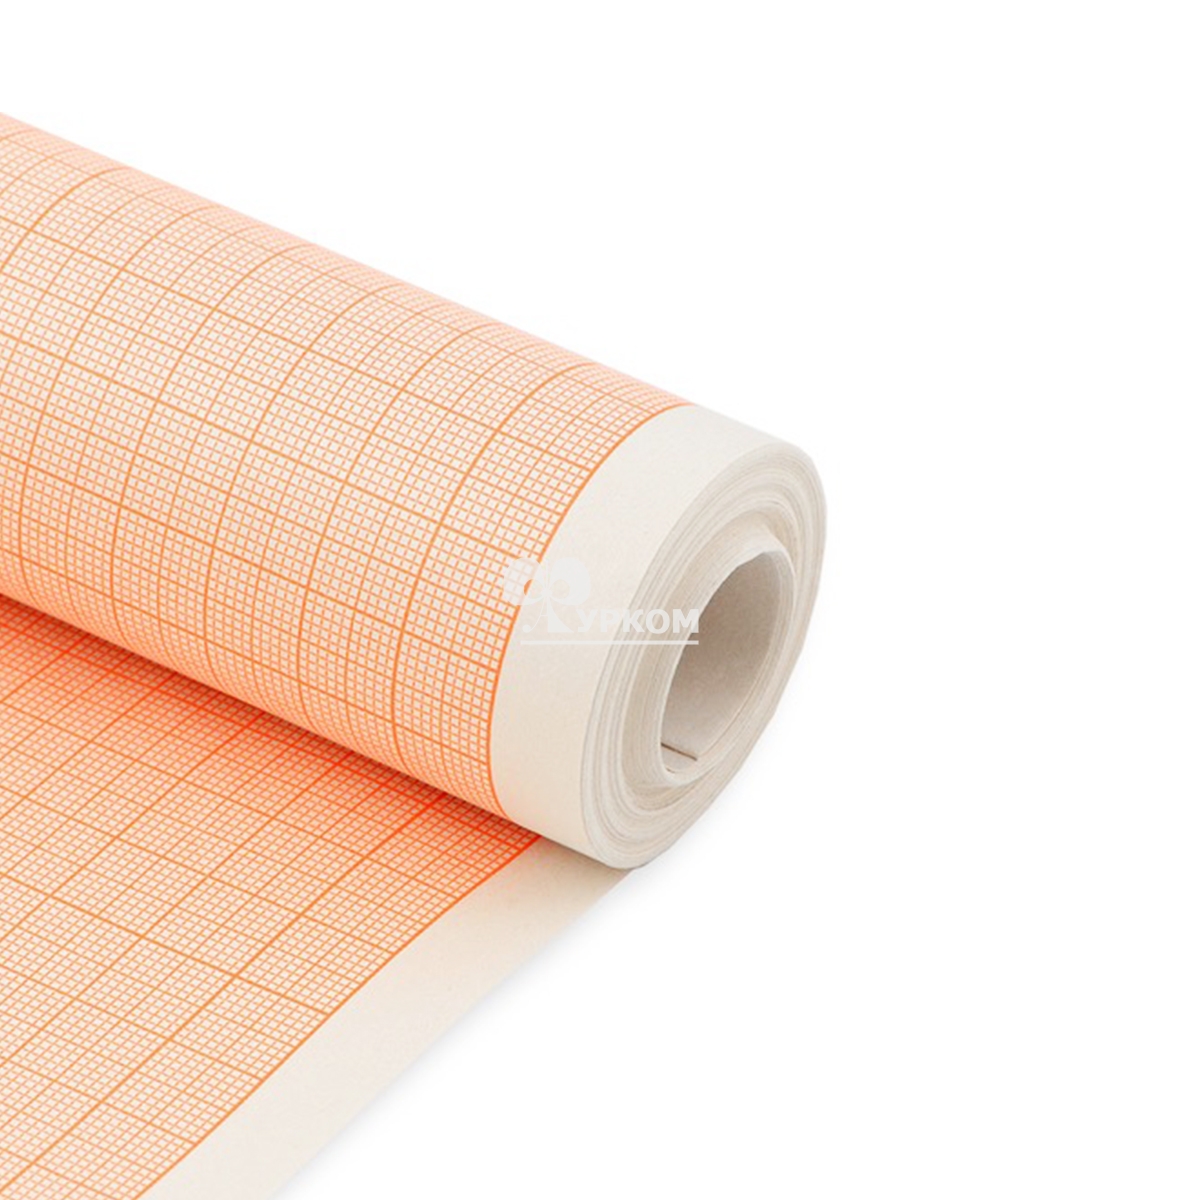 Миллиметровая бумага (масштабно-координатная) в рулоне 5 м, ширина 87 см, 87805